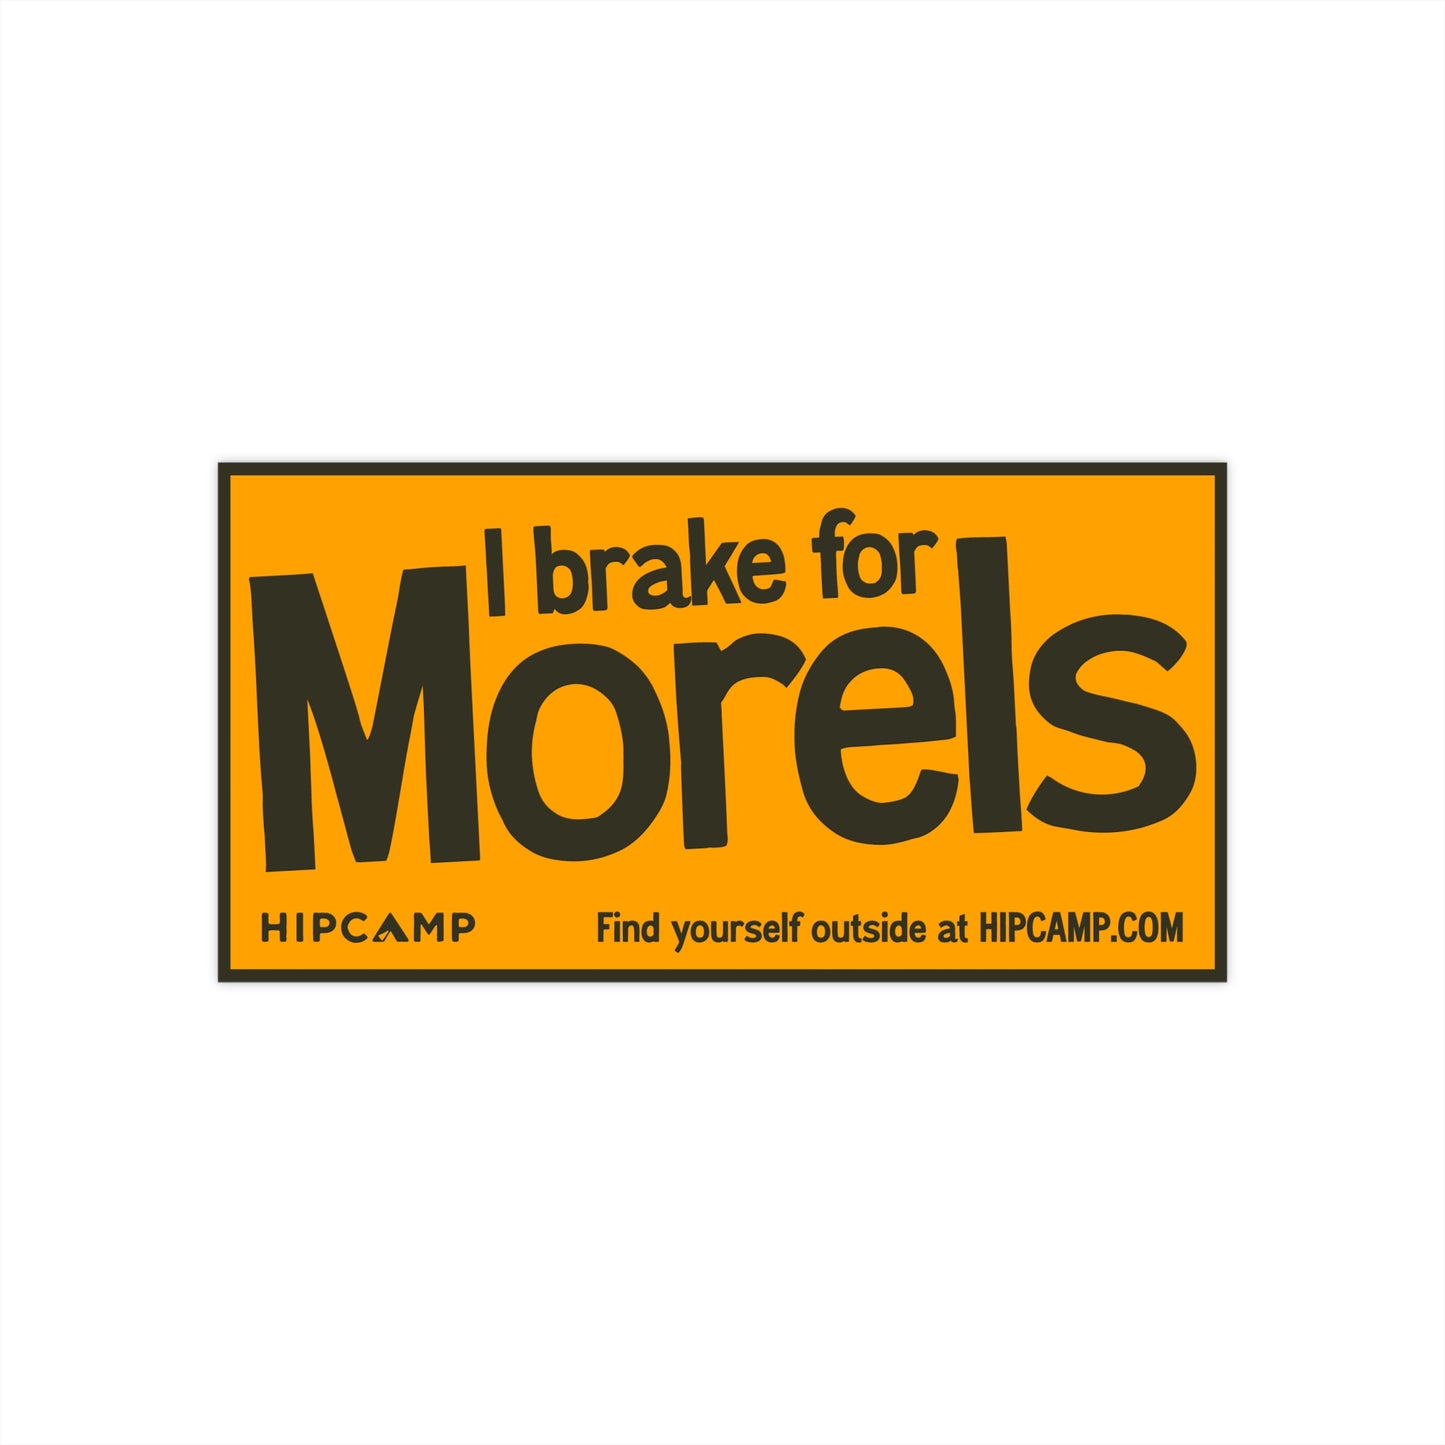 "I brake for morels" Bumper Sticker